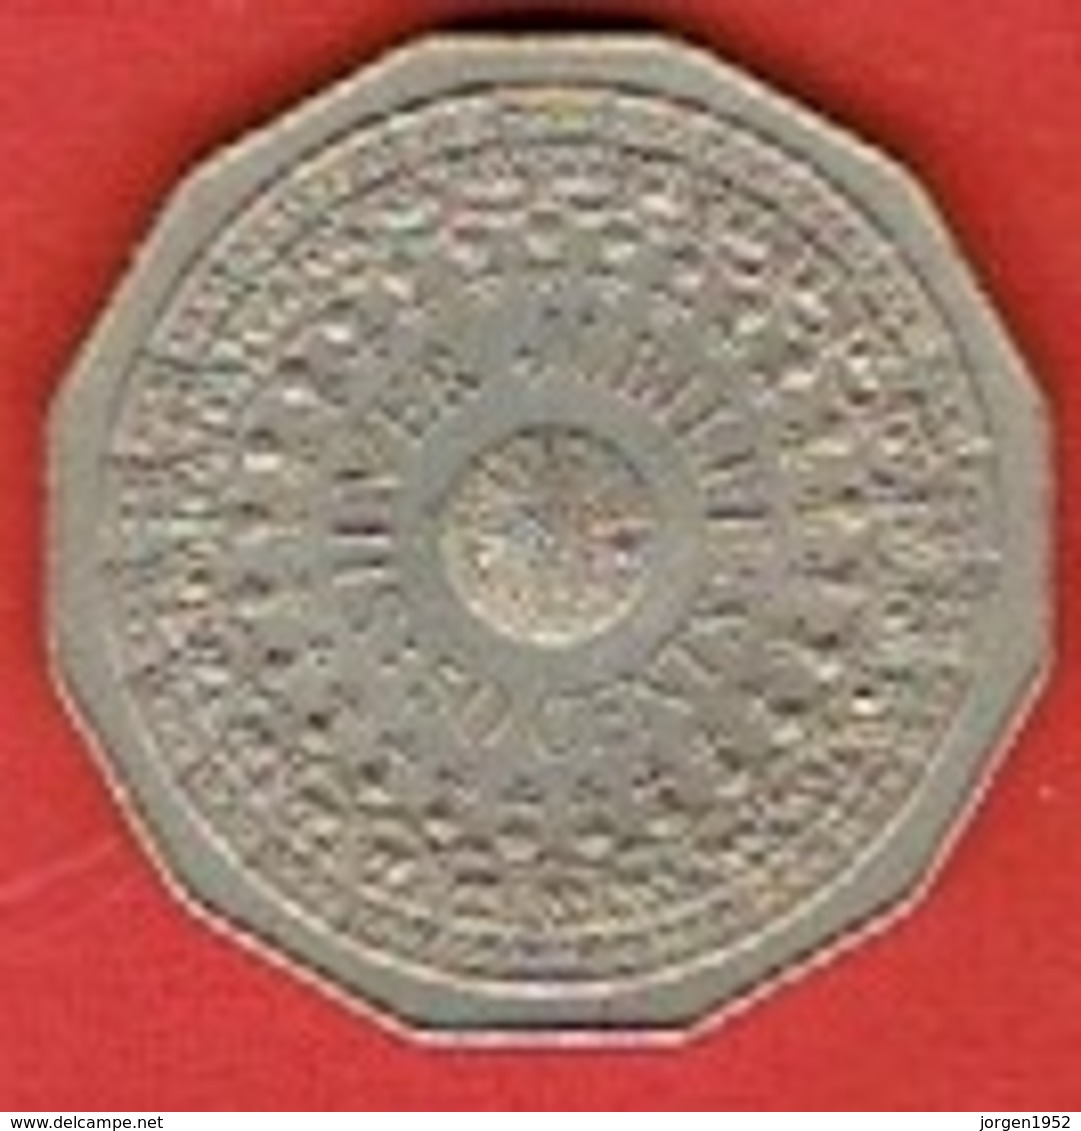 AUSTRALIA  # 50 Cents - Elizabeth II Silver Jubilee  FROM 1977 - 50 Cents